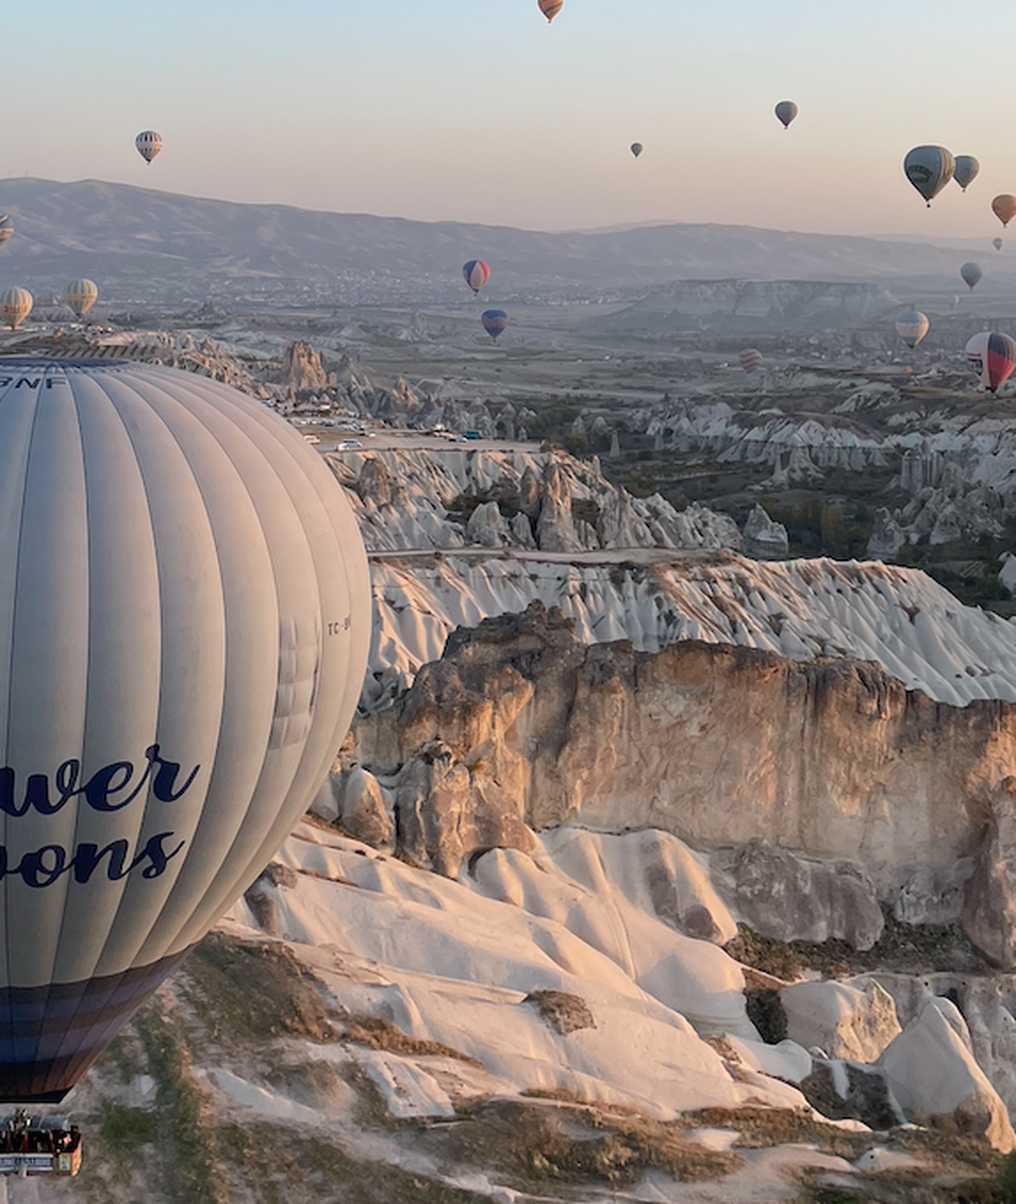 Isplati se ustati u 4:30 i doživjeti let balonom u Kapadokiji, ti se prizori pamte cijeli život